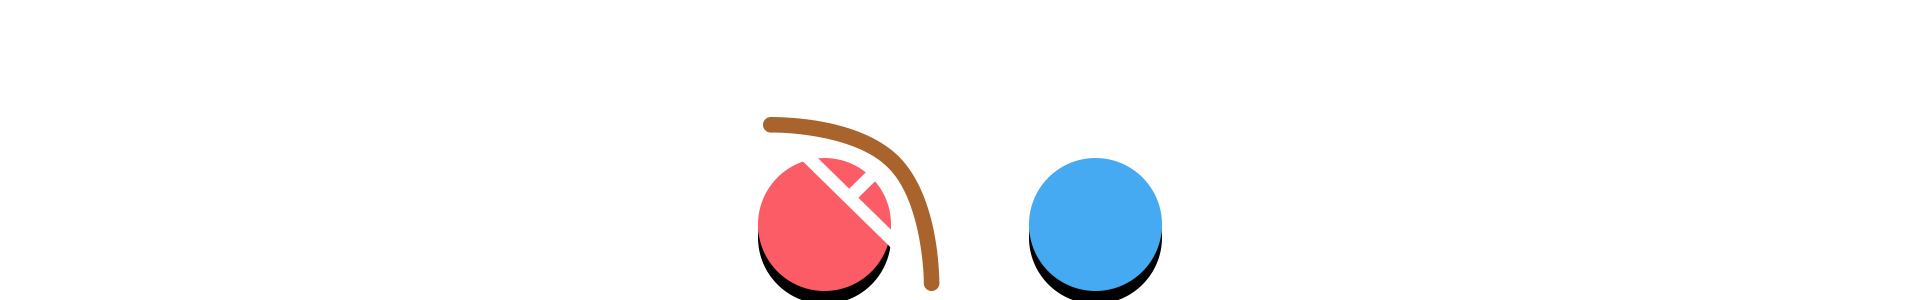 Symbiotic